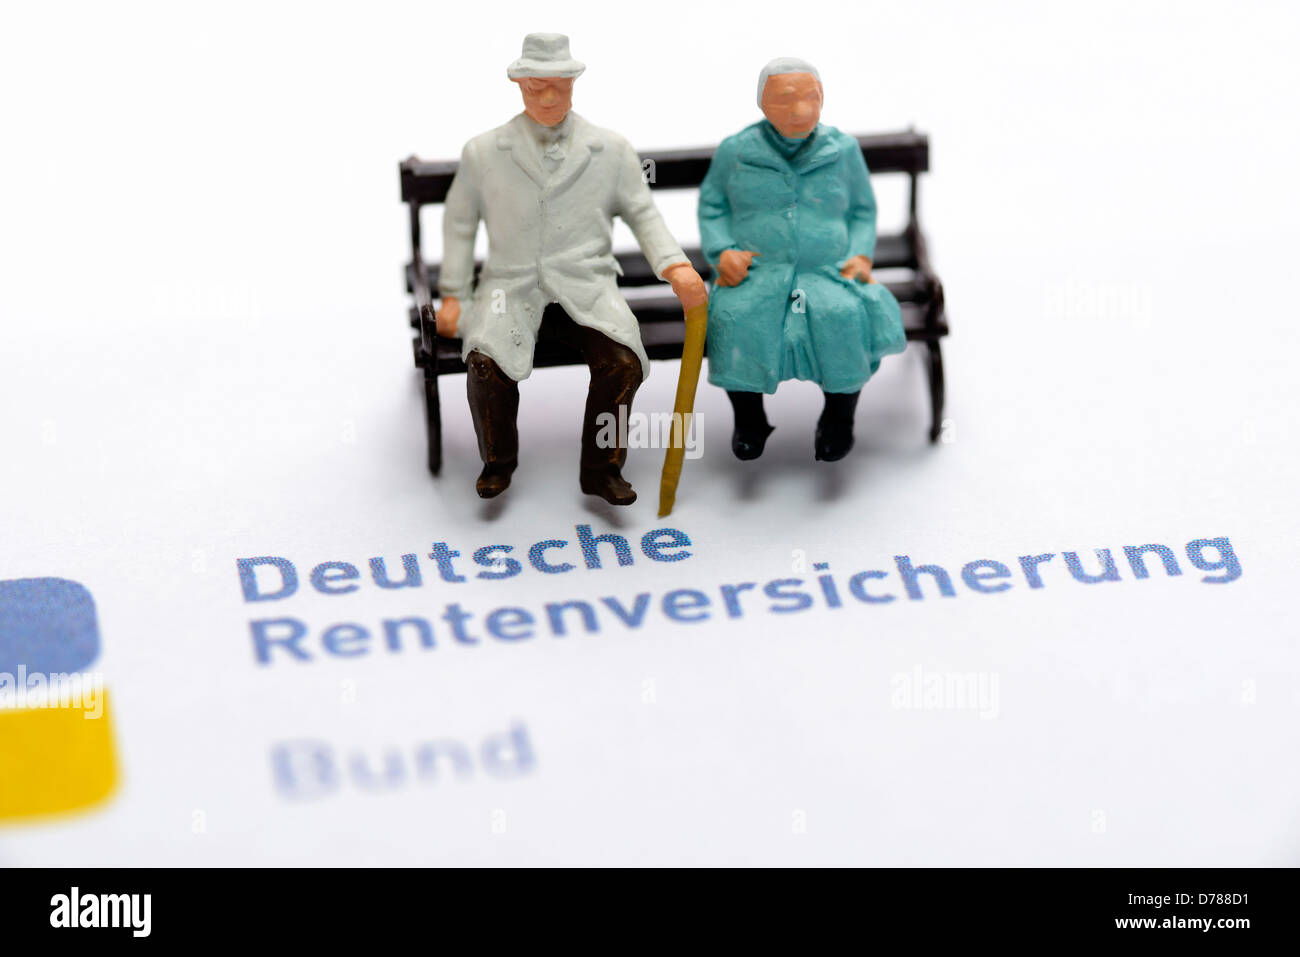 Miniatura Senior Citizen's coppia e corsa del regime pensionistico tedesco, simbolico pensioni foto Foto Stock